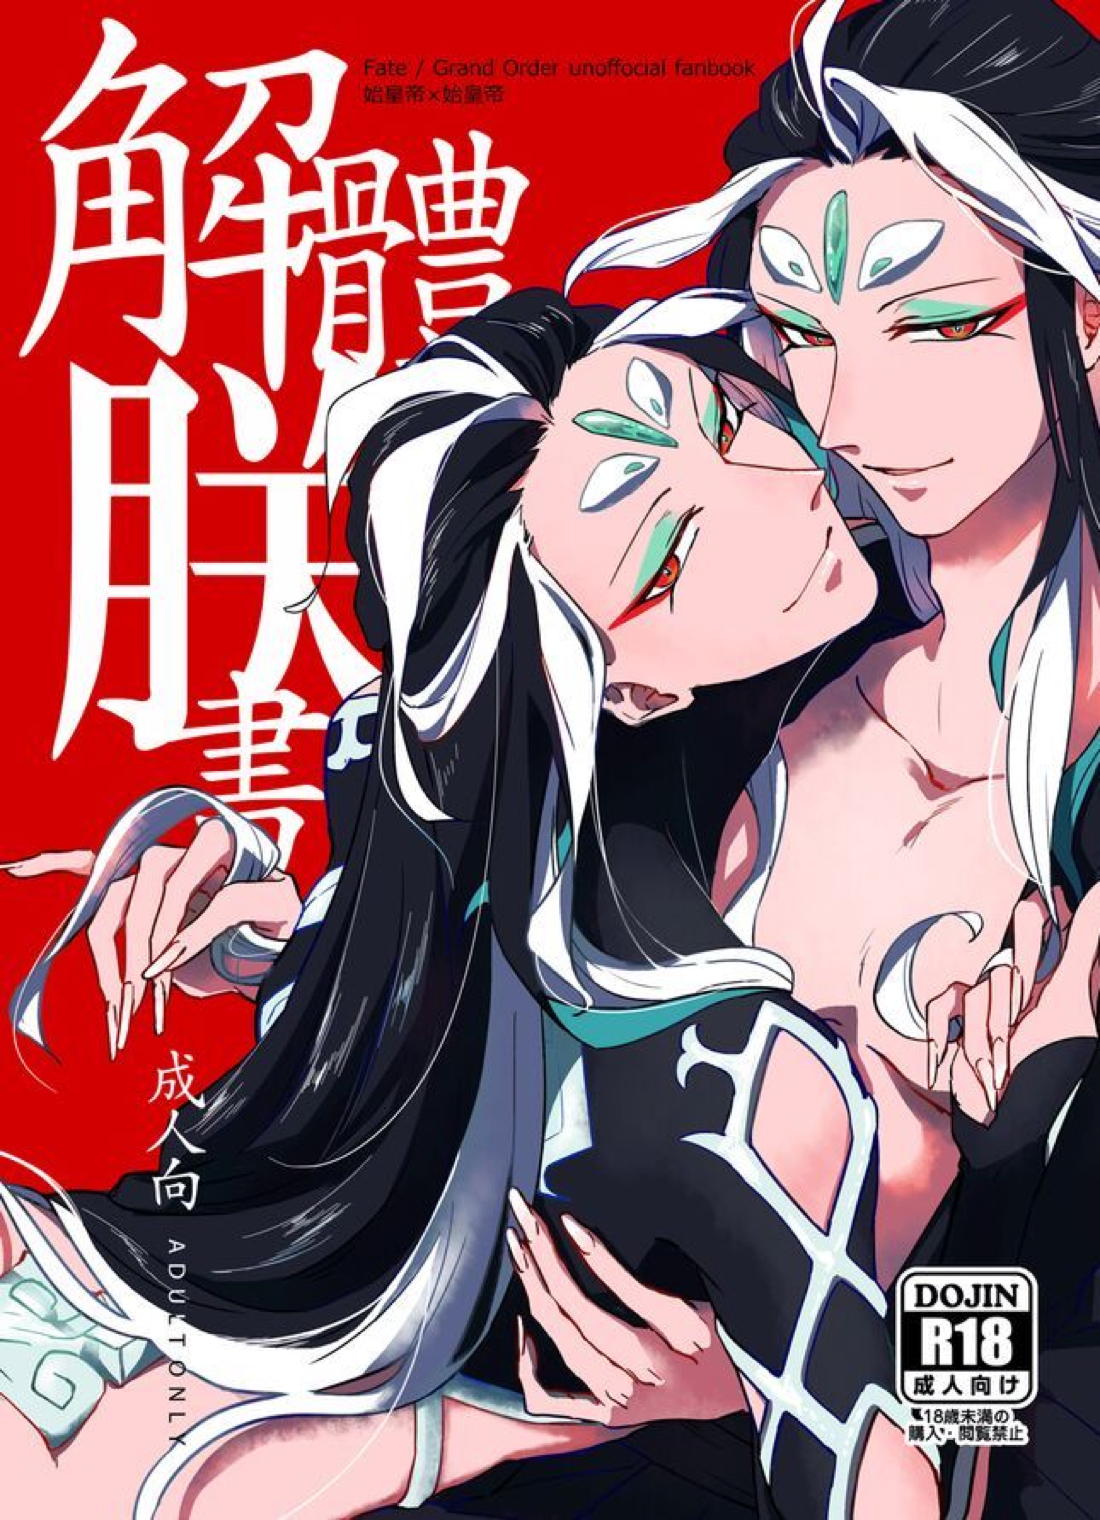 【BL漫画 Fate/Grand Order】男性体と無性体の始皇帝が同期するために媚薬を口にしながら肌を重ねるイチャイチャボーイズラブエッチ